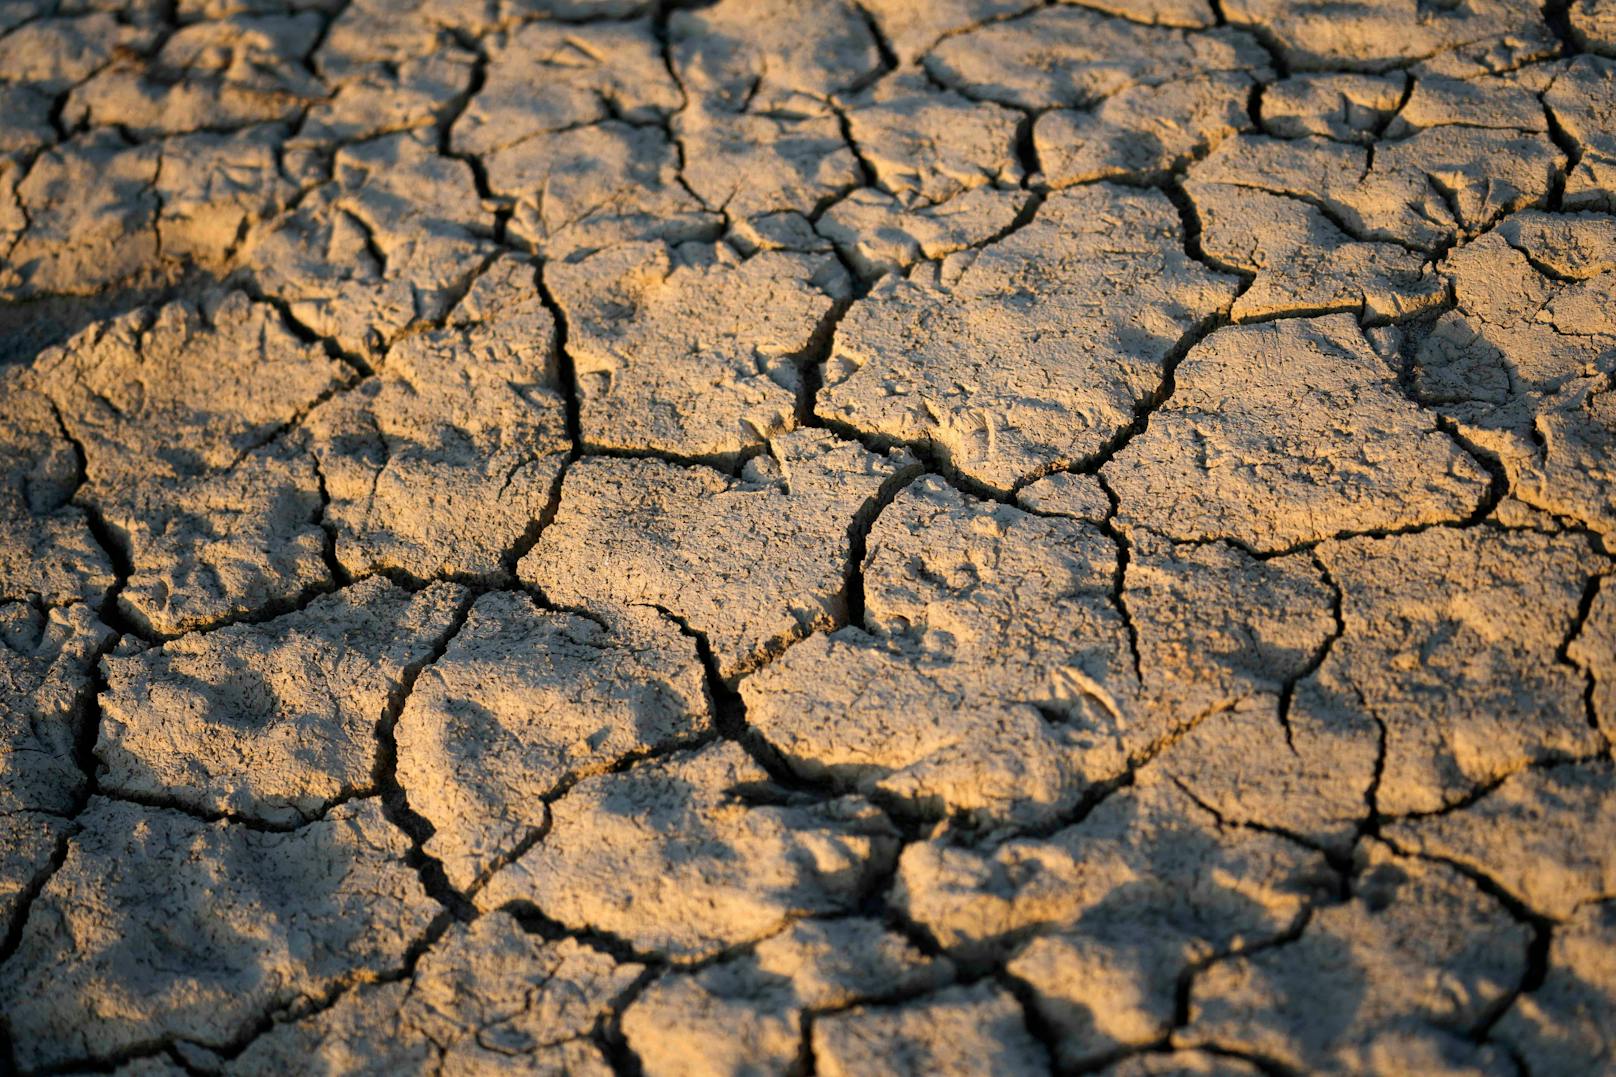 Der Pegel des Flusses Po ist auf ein Rekordtief gesunken, nach Angaben des Landwirtschaftsverbandes Coldiretti ist die Hälfte der Anbauflächen bedroht, ein Drittel der nationalen Landwirtschaftsproduktion ist gefährdet.